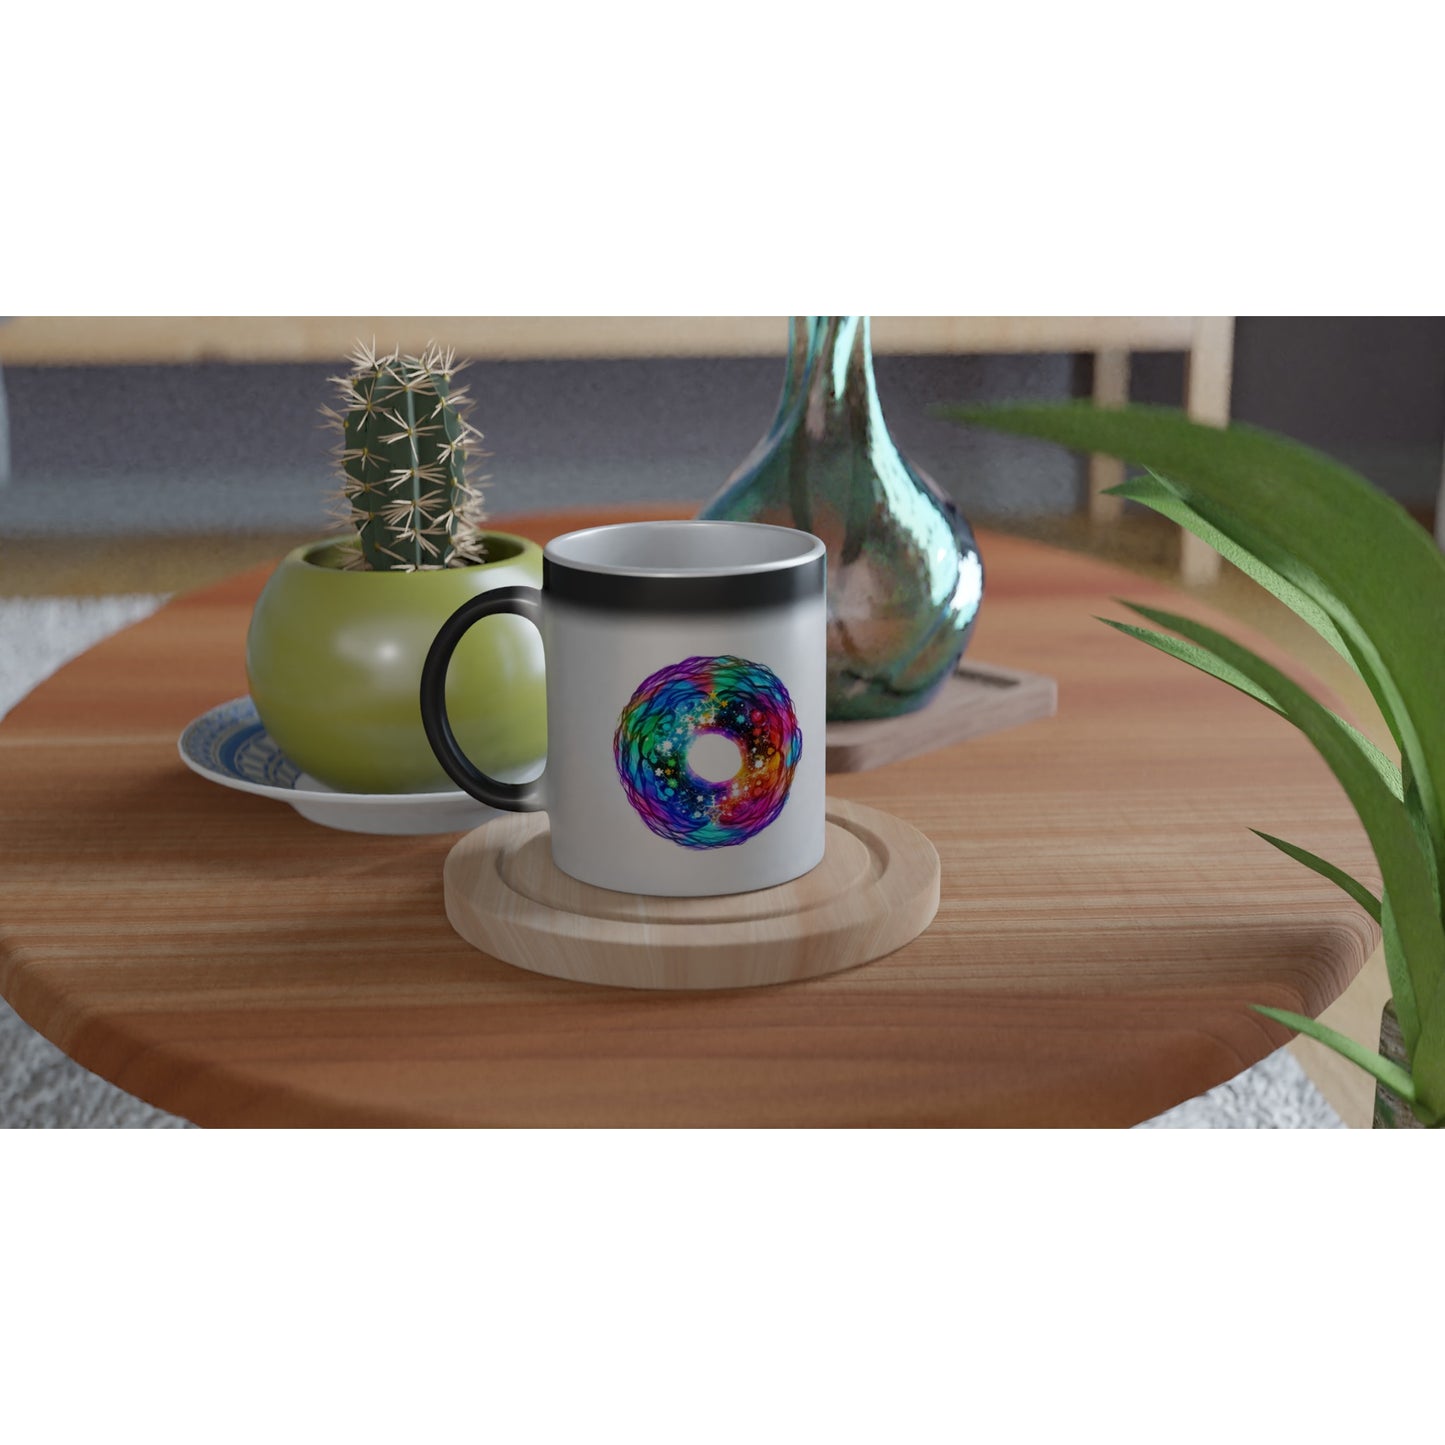 The Expansion brings Lightness - Magic Ceramic Mug 325ml